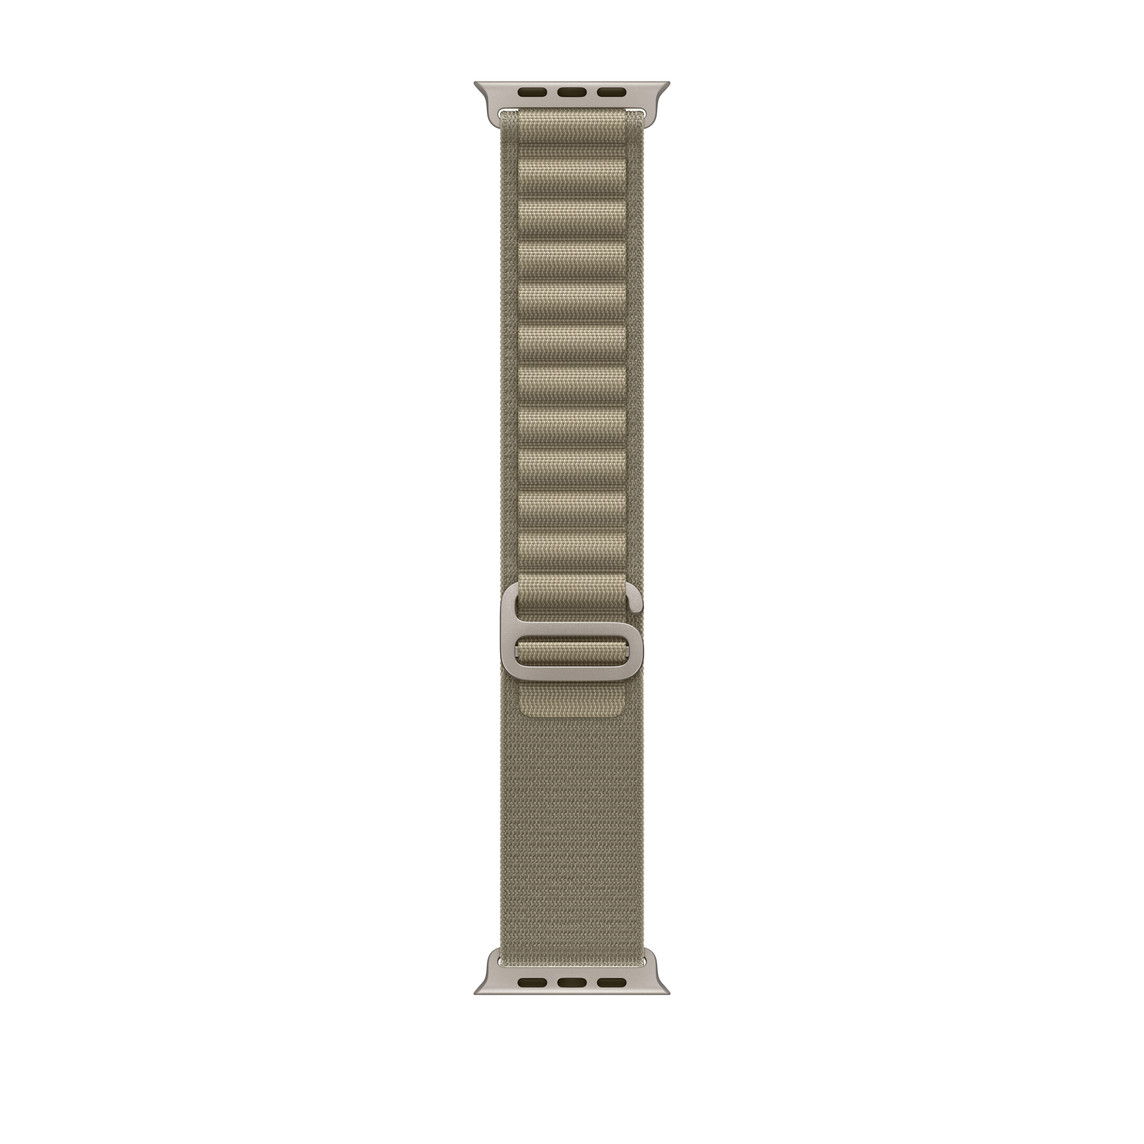 Alpine Loop Armband in Oliv, zweischichtiges Textilgewebe mit Ösen und G-Haken Schließe aus Titan